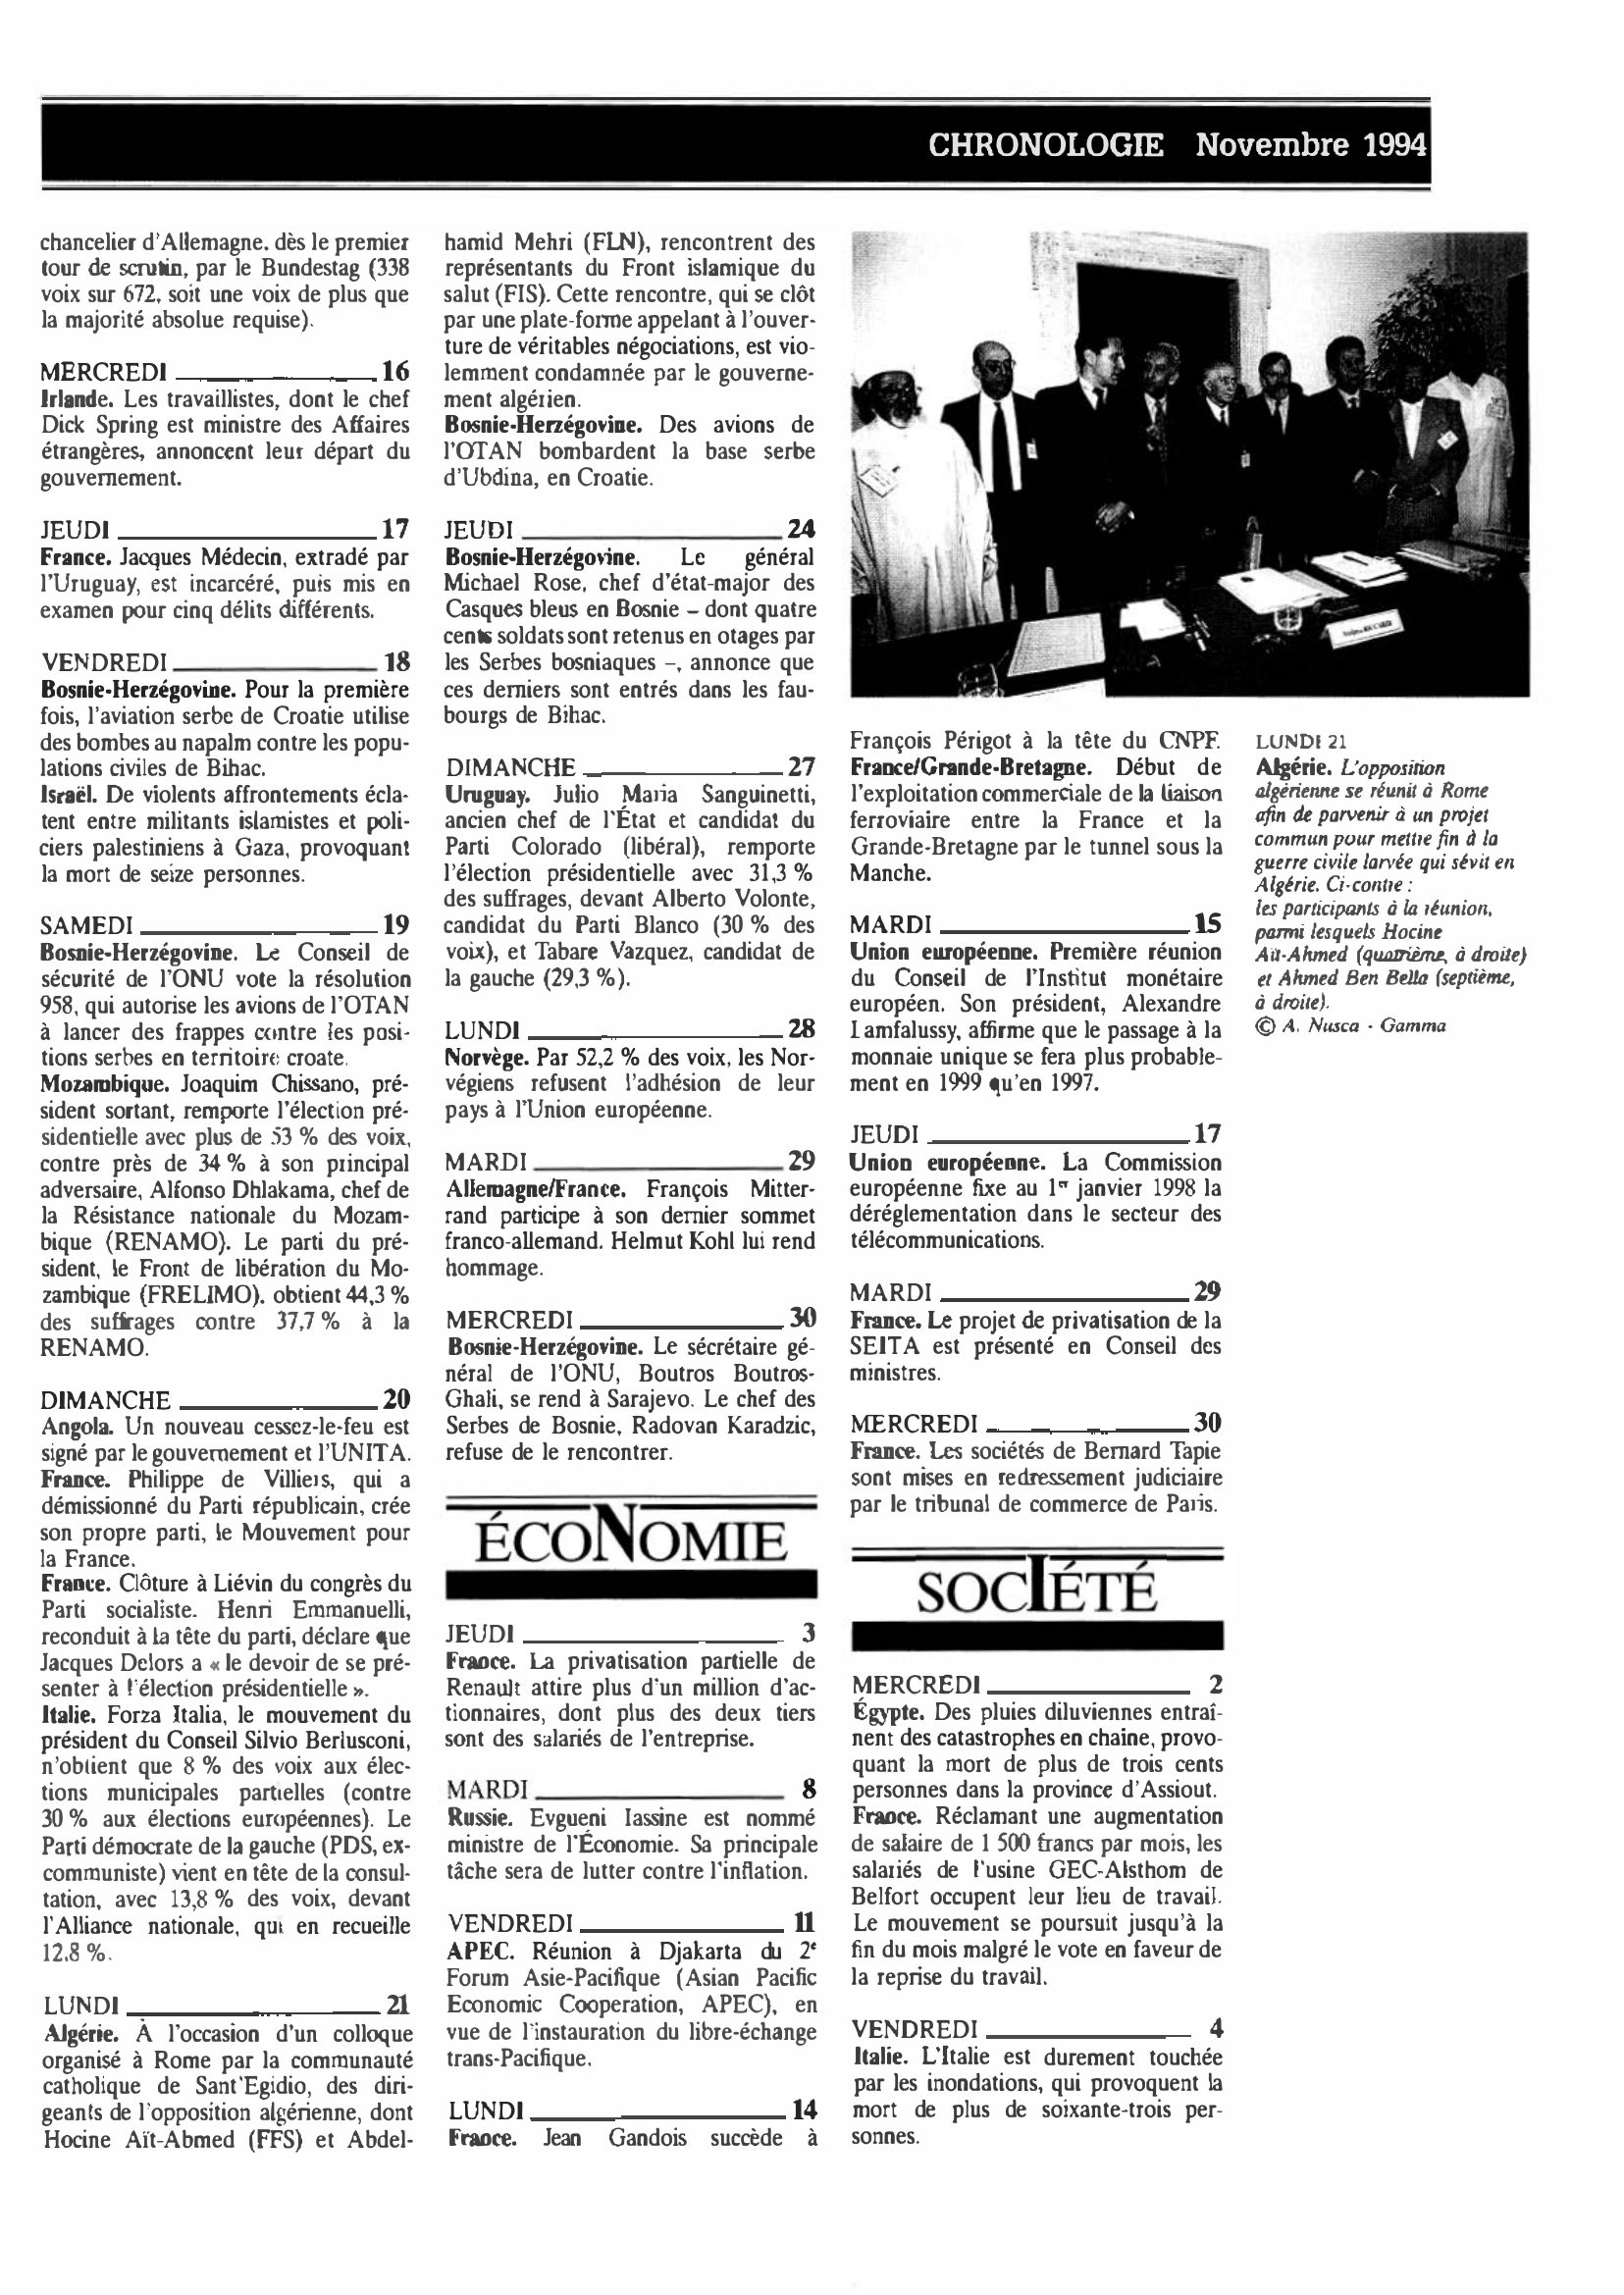 Prévisualisation du document CHRONOLOGIE Novembre 1994 dans le monde (histoire chronologique)